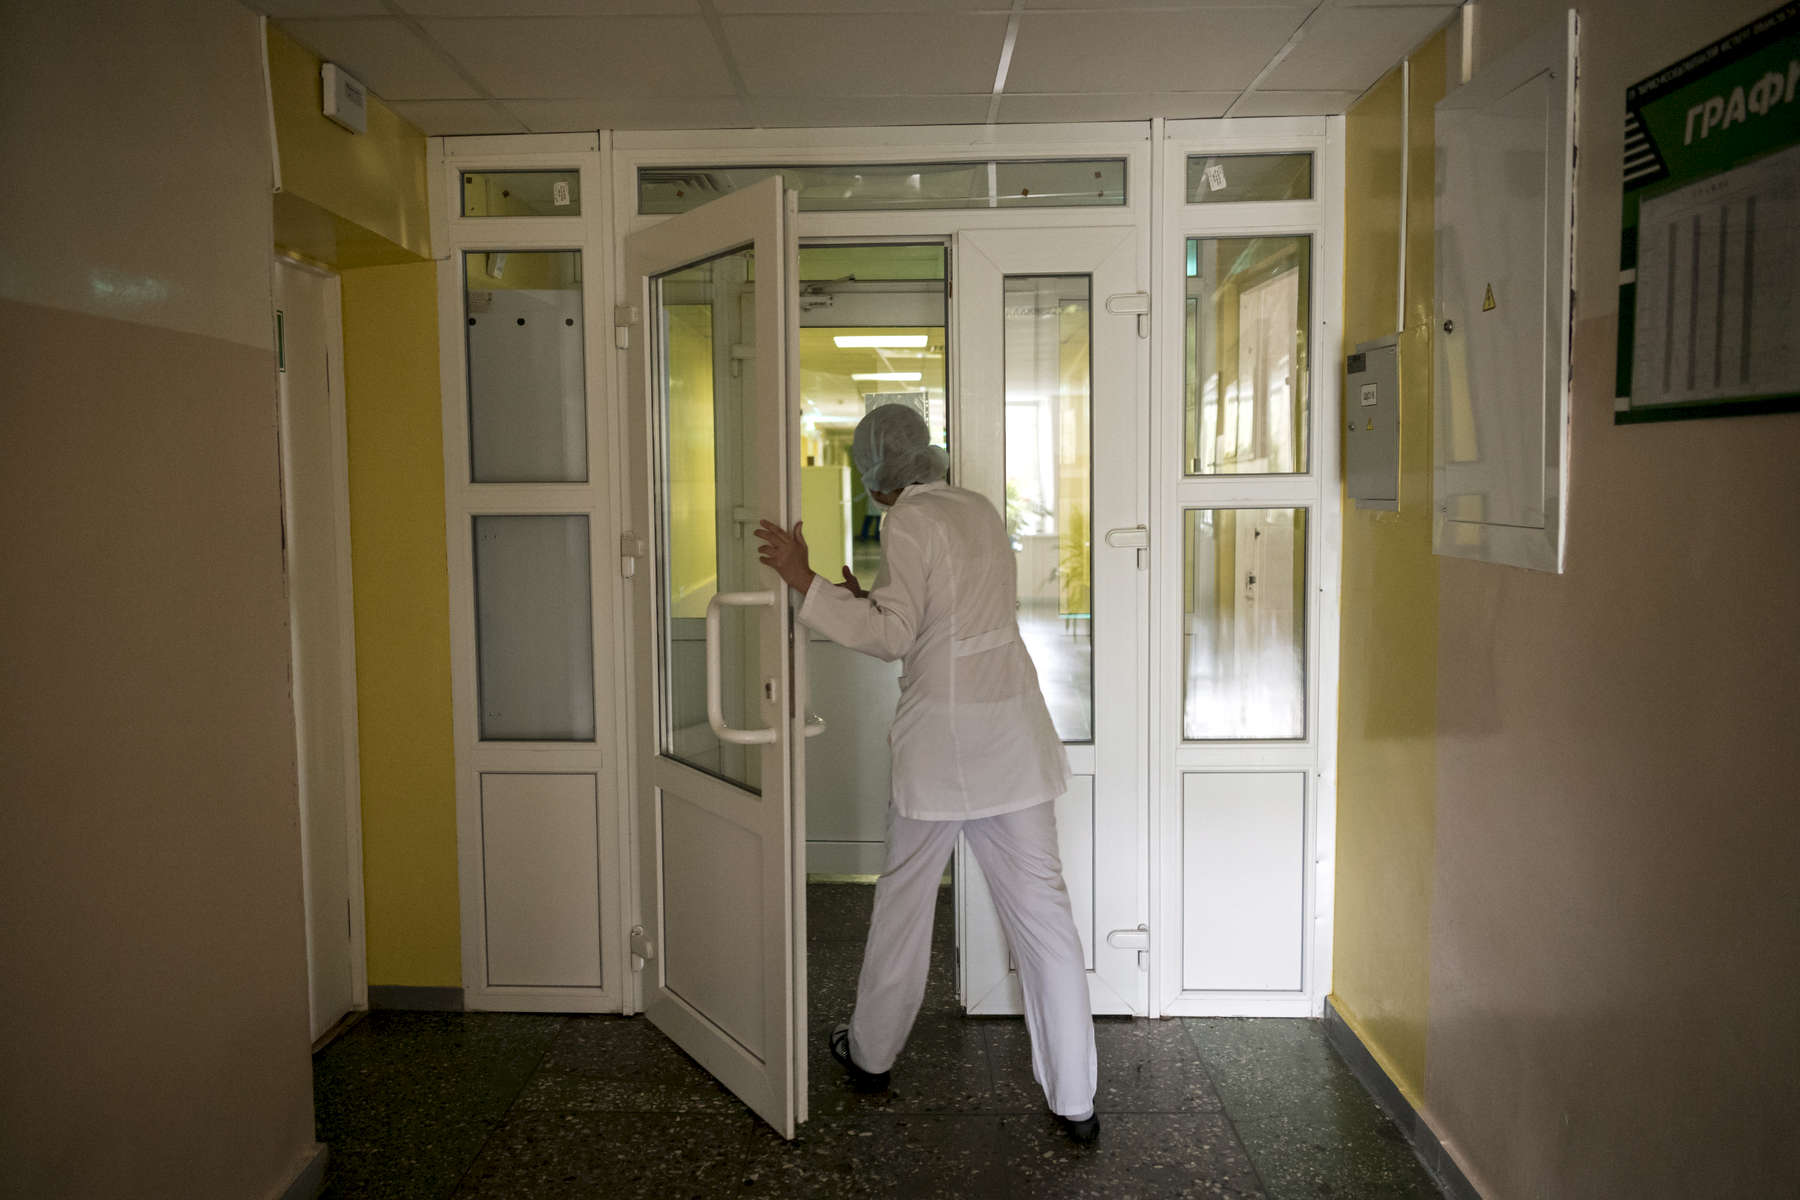 Le personnel et les visiteurs doivent porter un masque lorsqu’ils rentrent en contact avec des patients atteints de tuberculose. Institut Républicain de la Tb, Minsk, Bielorussie, 2018.